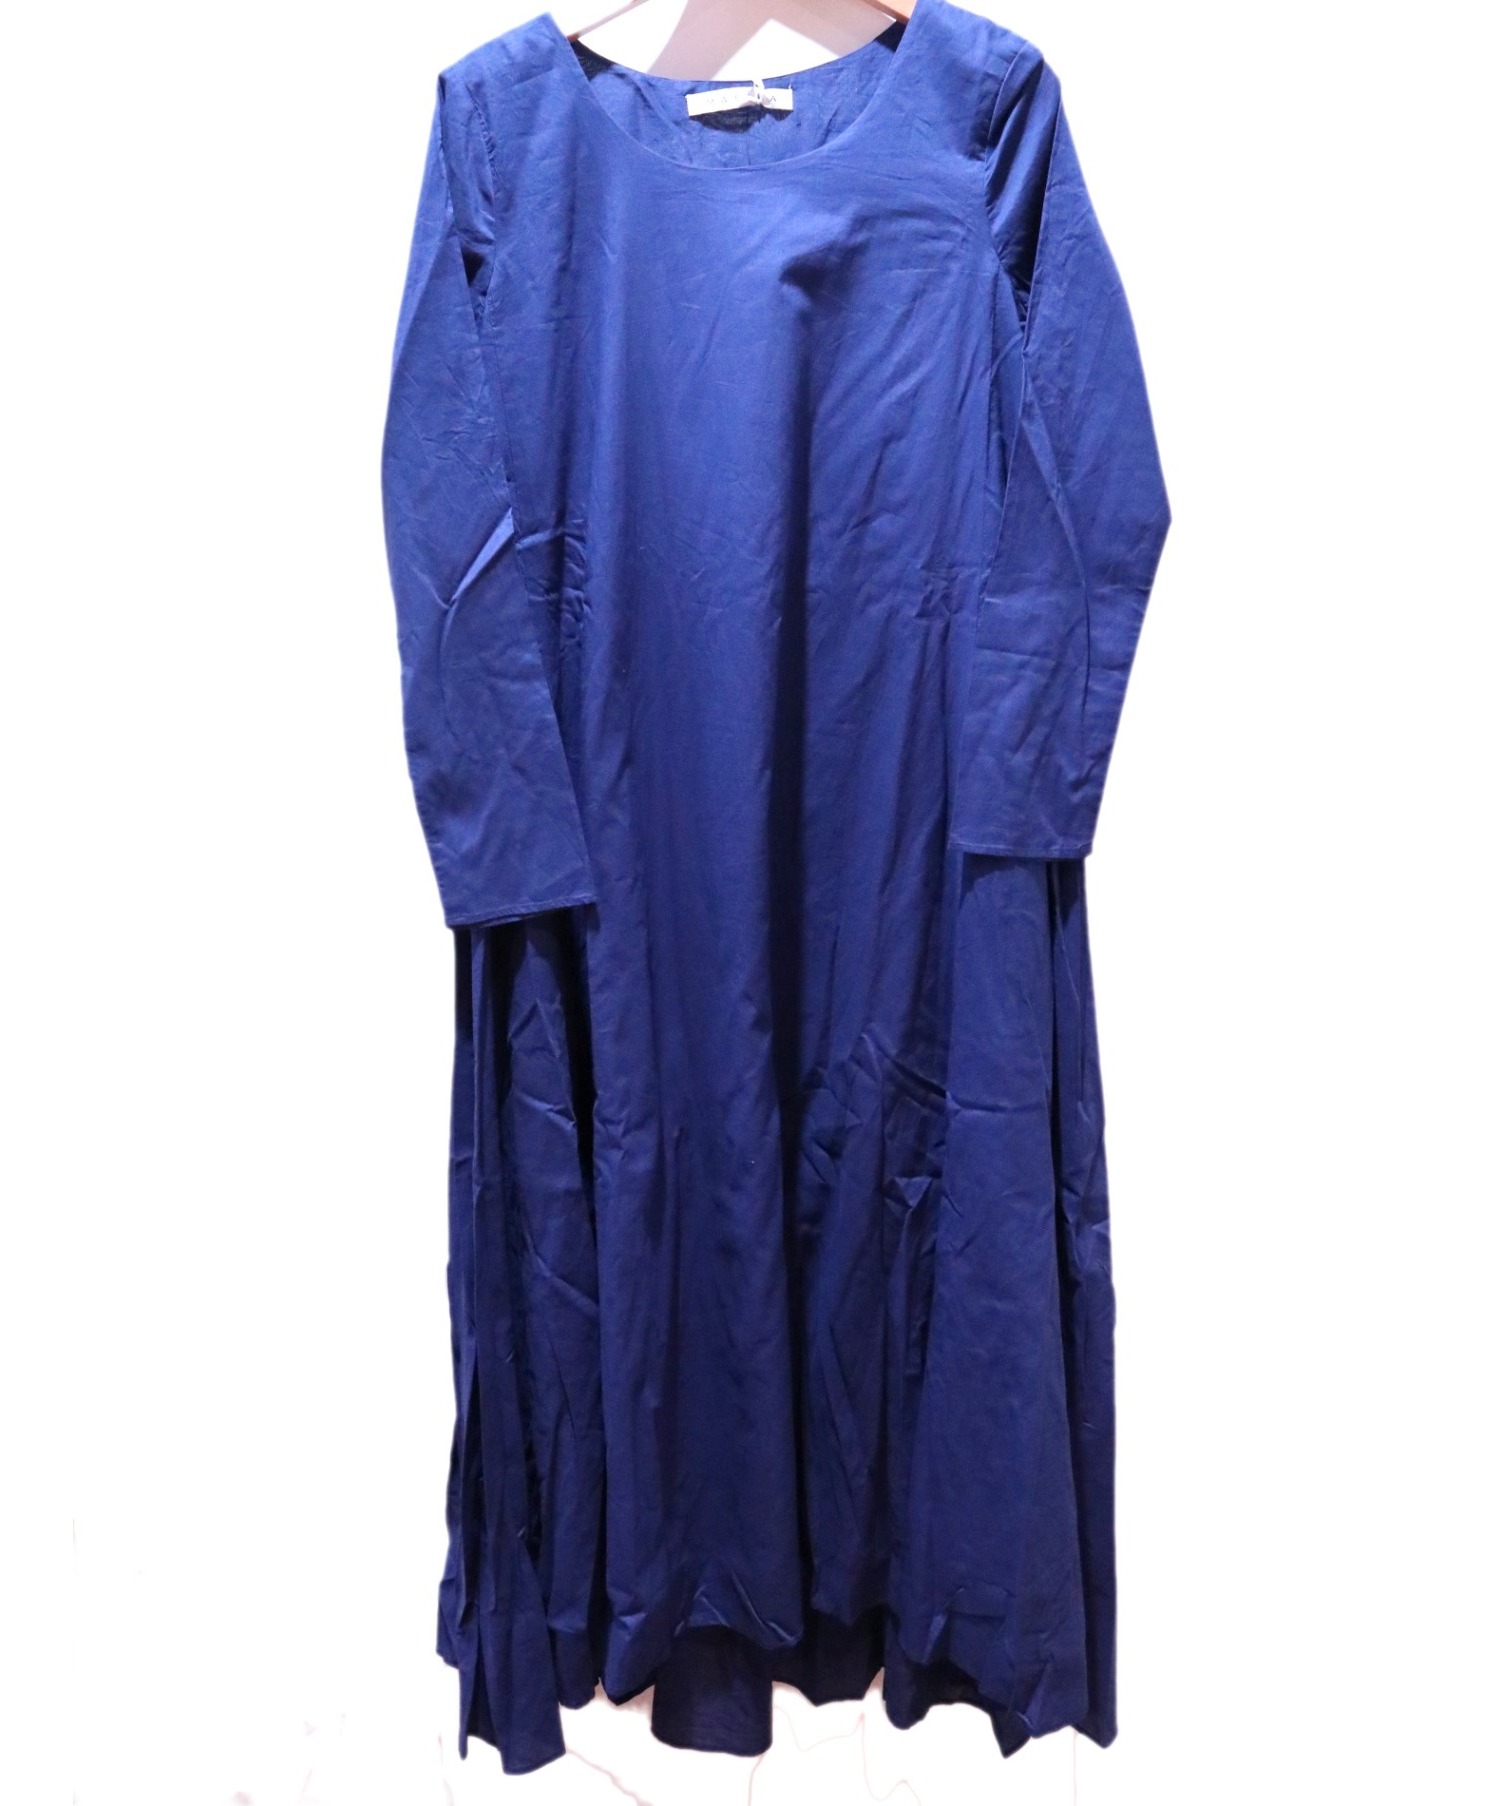 MARIHA (マリハ) 花園のドレス ブルー サイズ:36